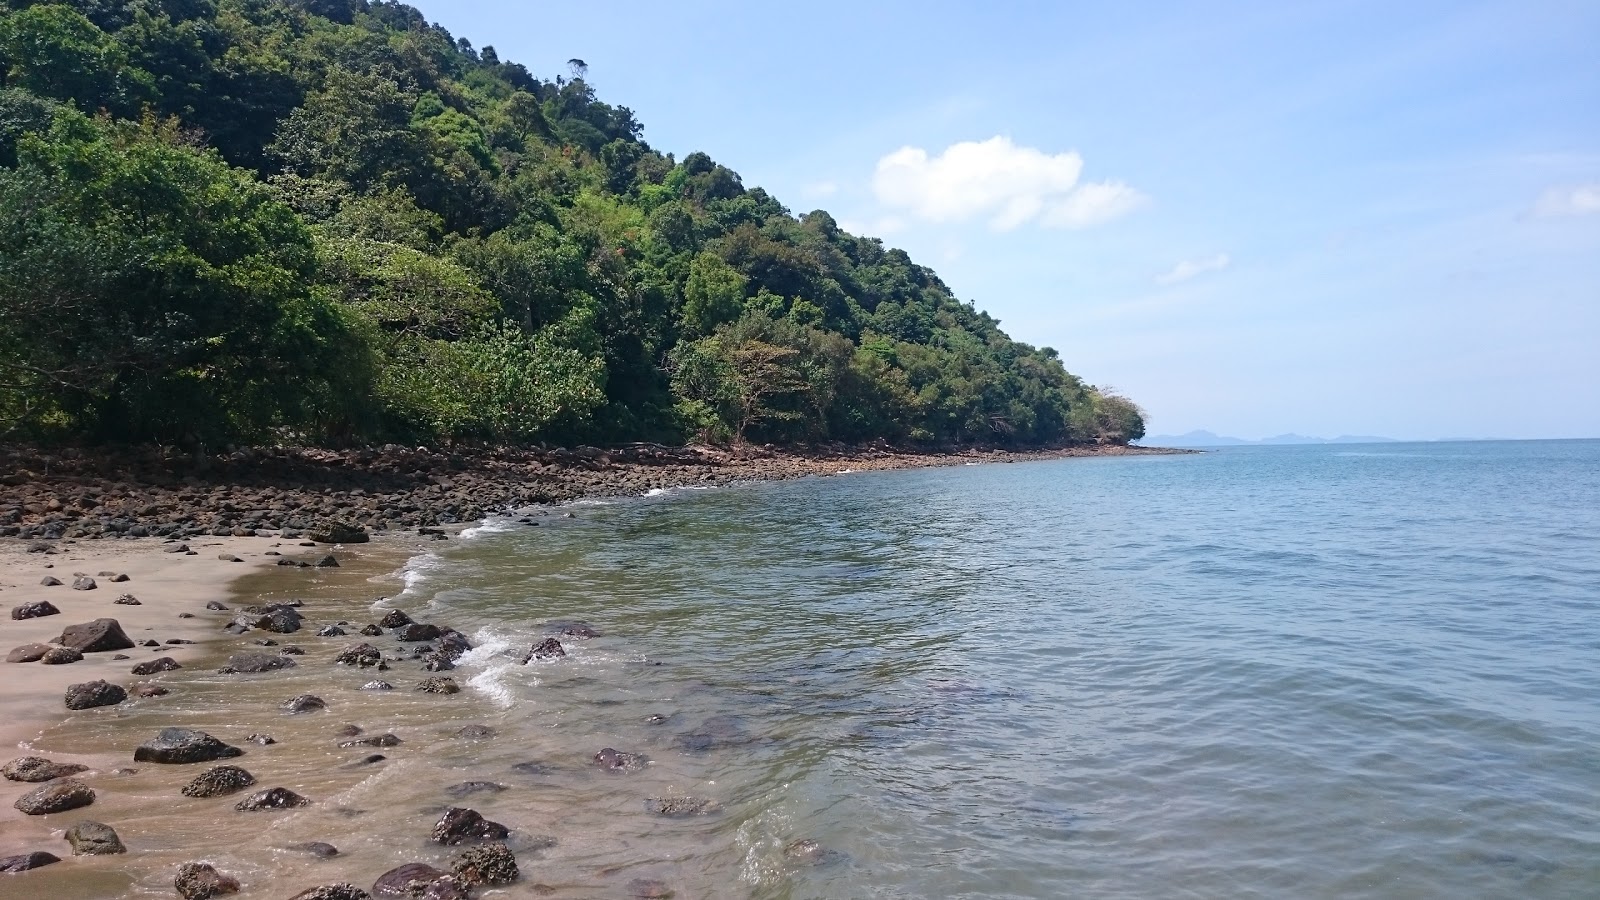 Foto di Coconut Beach ubicato in zona naturale